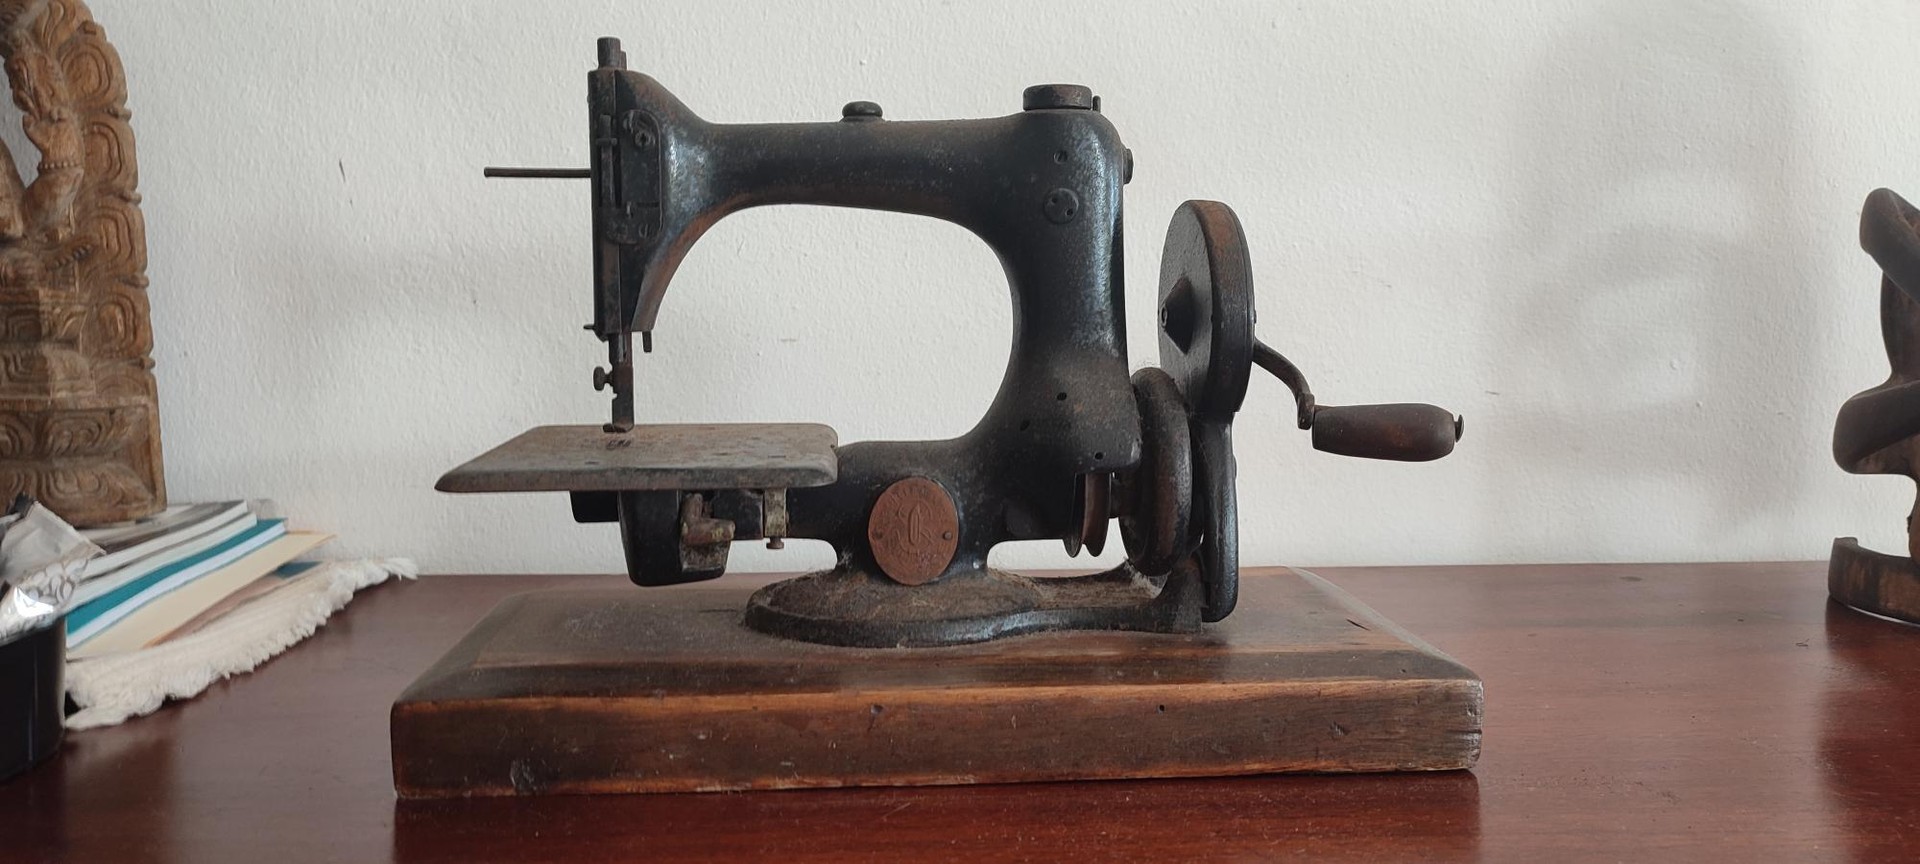 arte y antigüedades - Exquisita máquina de coser Singer, antigua 1